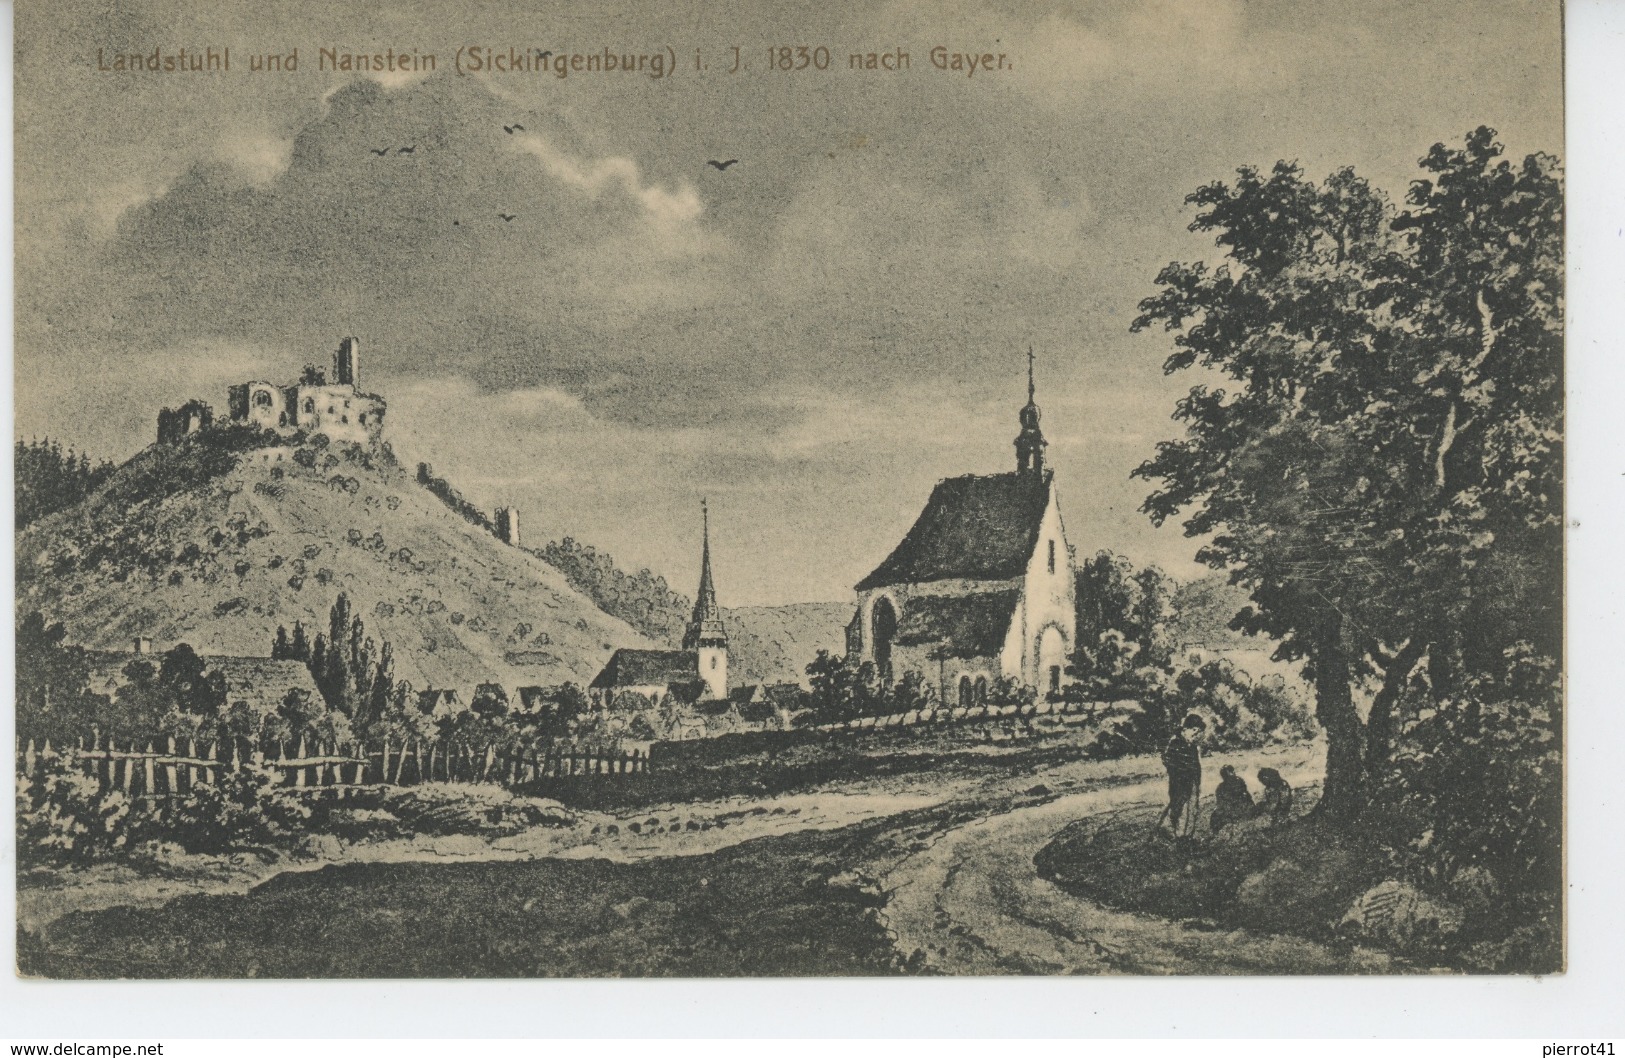 ALLEMAGNE - LANDSTUHL Und NANSTEIN Im Jahr 1830 Nach Gayer - Landstuhl